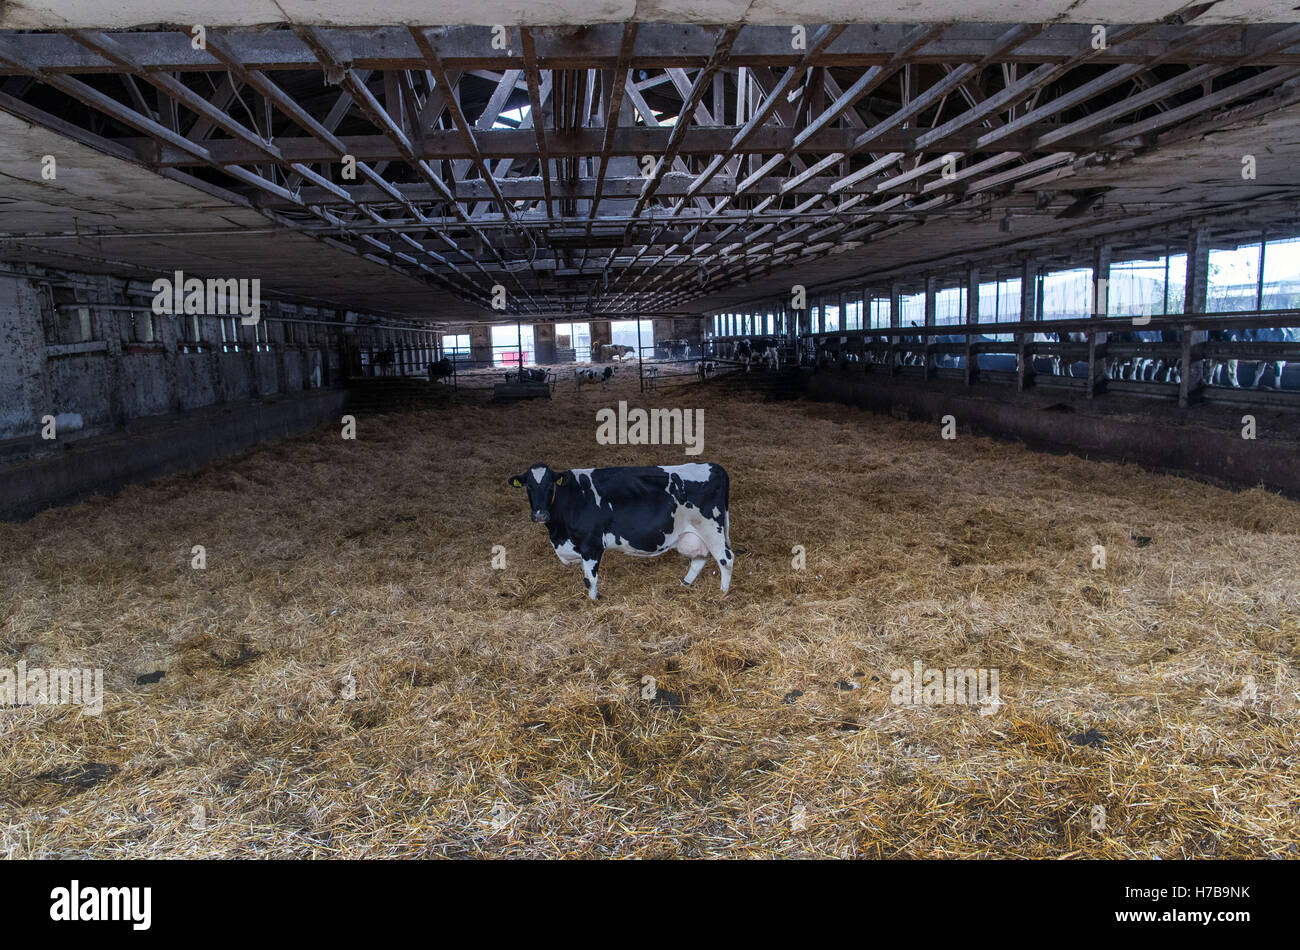 Boeken, Allemagne. 26Th Oct, 2016. Certaines de ces vaches dans une étable de la coopérative de production à Cramonshagen Boeken, Allemagne, 26 octobre 2016. La coopérative s'arrête leur production laitière, le dernier des 400 vaches laitières doit quitter les écuries dans les jours à venir, qui sera démoli. Environ 5 000 fermes laitières en Allemagne arrêté leur production en raison de la crise du marché du lait, le ministère de l'Agriculture a informé. PHOTO : JENS BUETTNER/dpa/Alamy Live News Banque D'Images